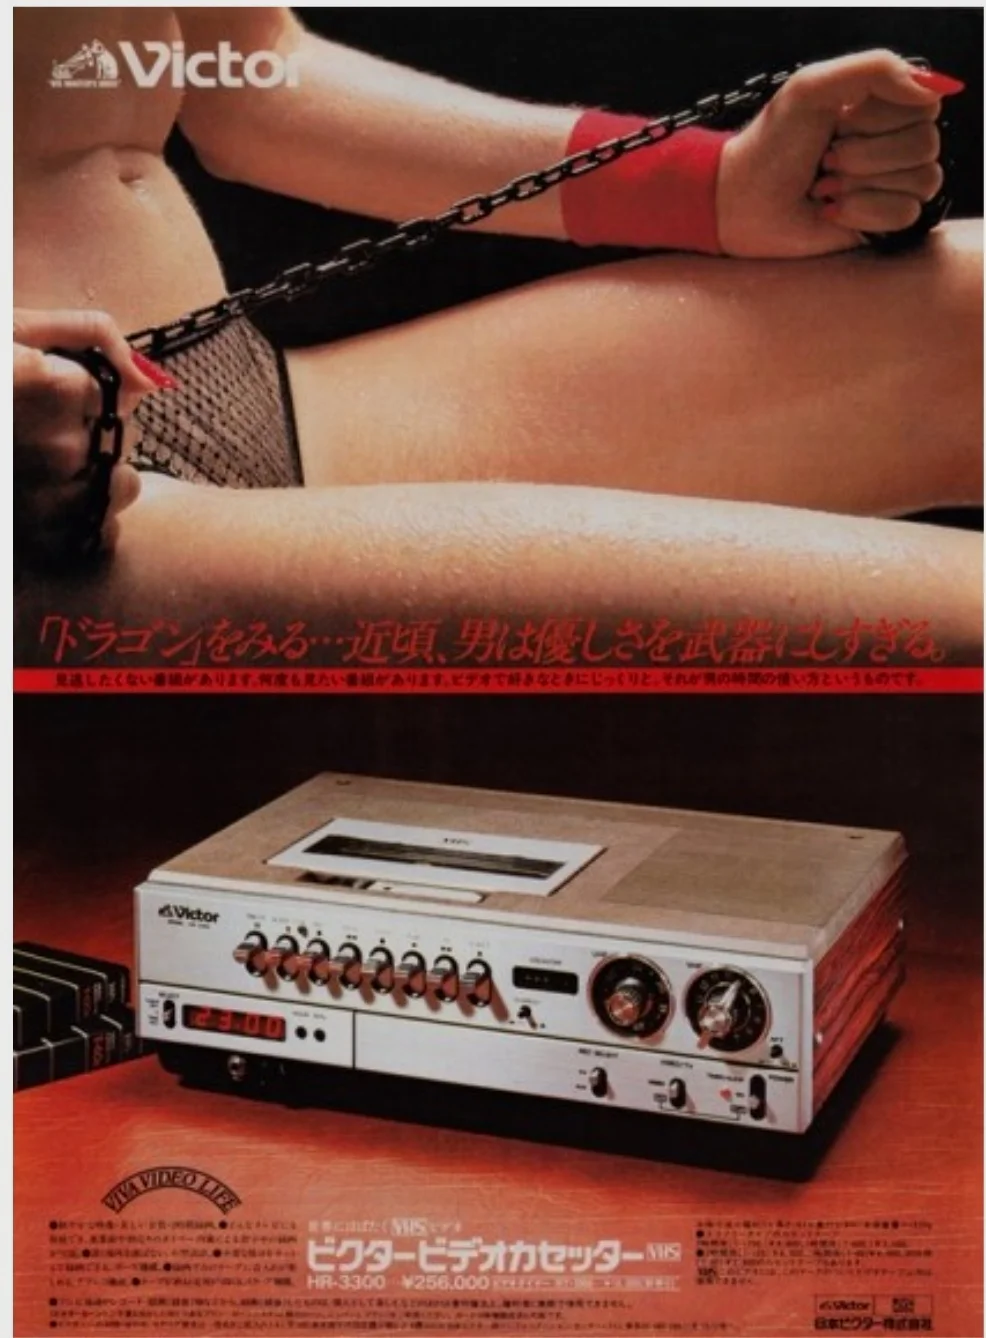 1976年 JVC生产了世界第一台VHS录像机